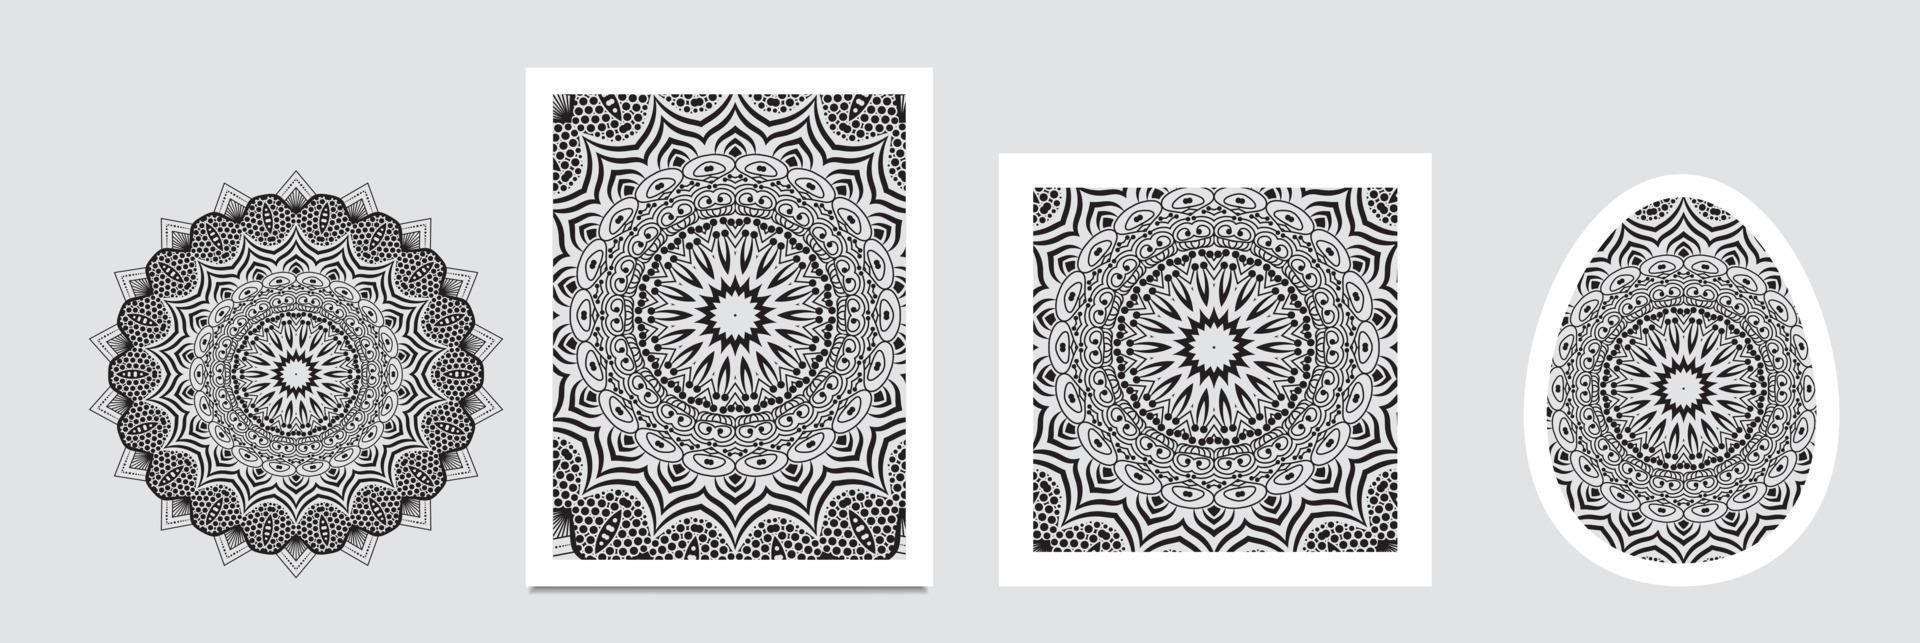 pancartas de medallones de paisley florales indios. adorno de mandala étnico. estilo de tatuaje de henna vectorial. se puede utilizar para textiles, tarjetas de felicitación, libros para colorear vector